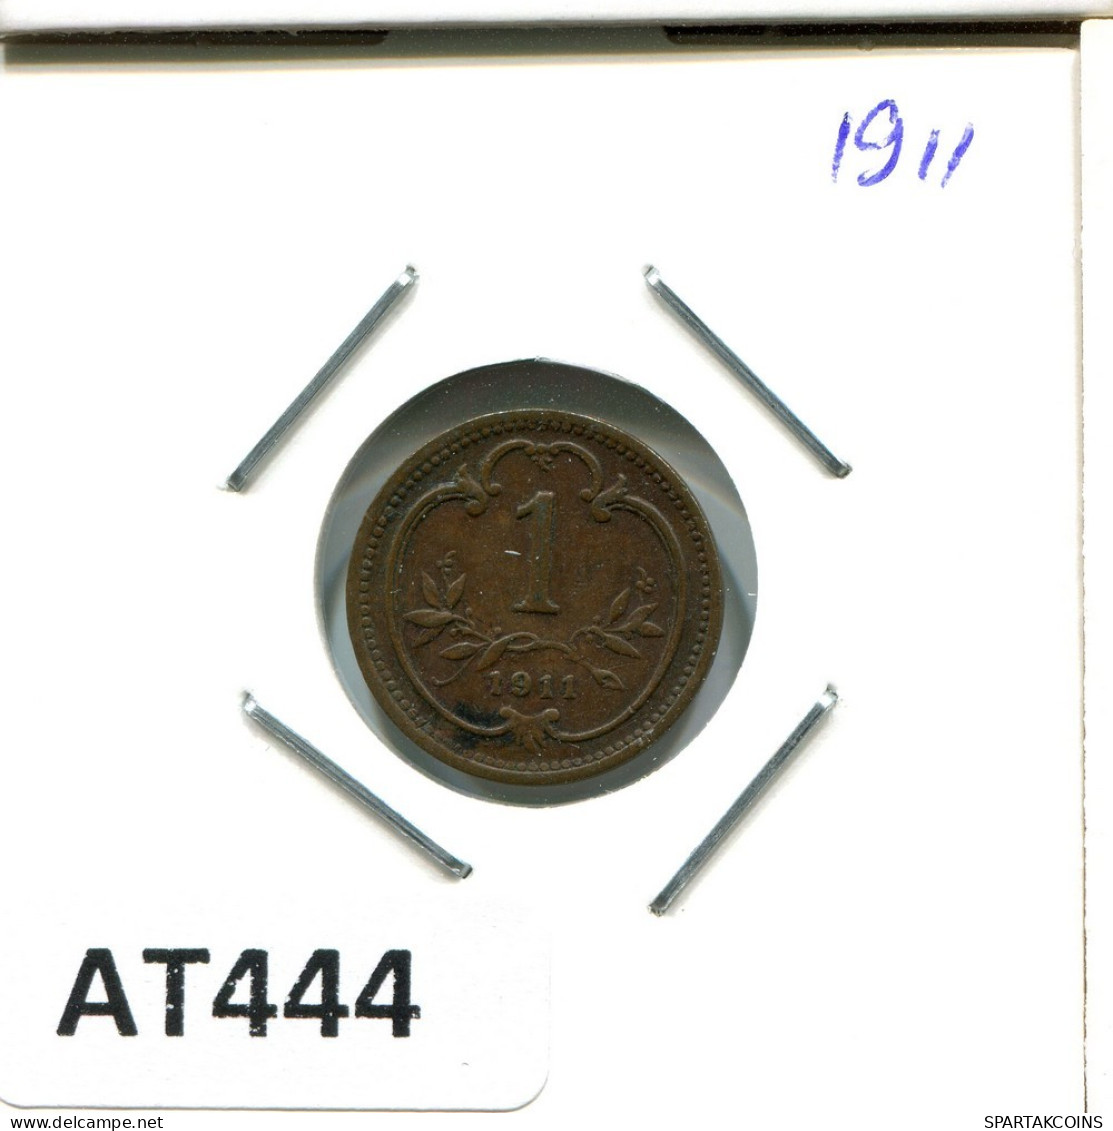 1 HELLER 1911 ÖSTERREICH AUSTRIA Münze #AT444.D.A - Oesterreich